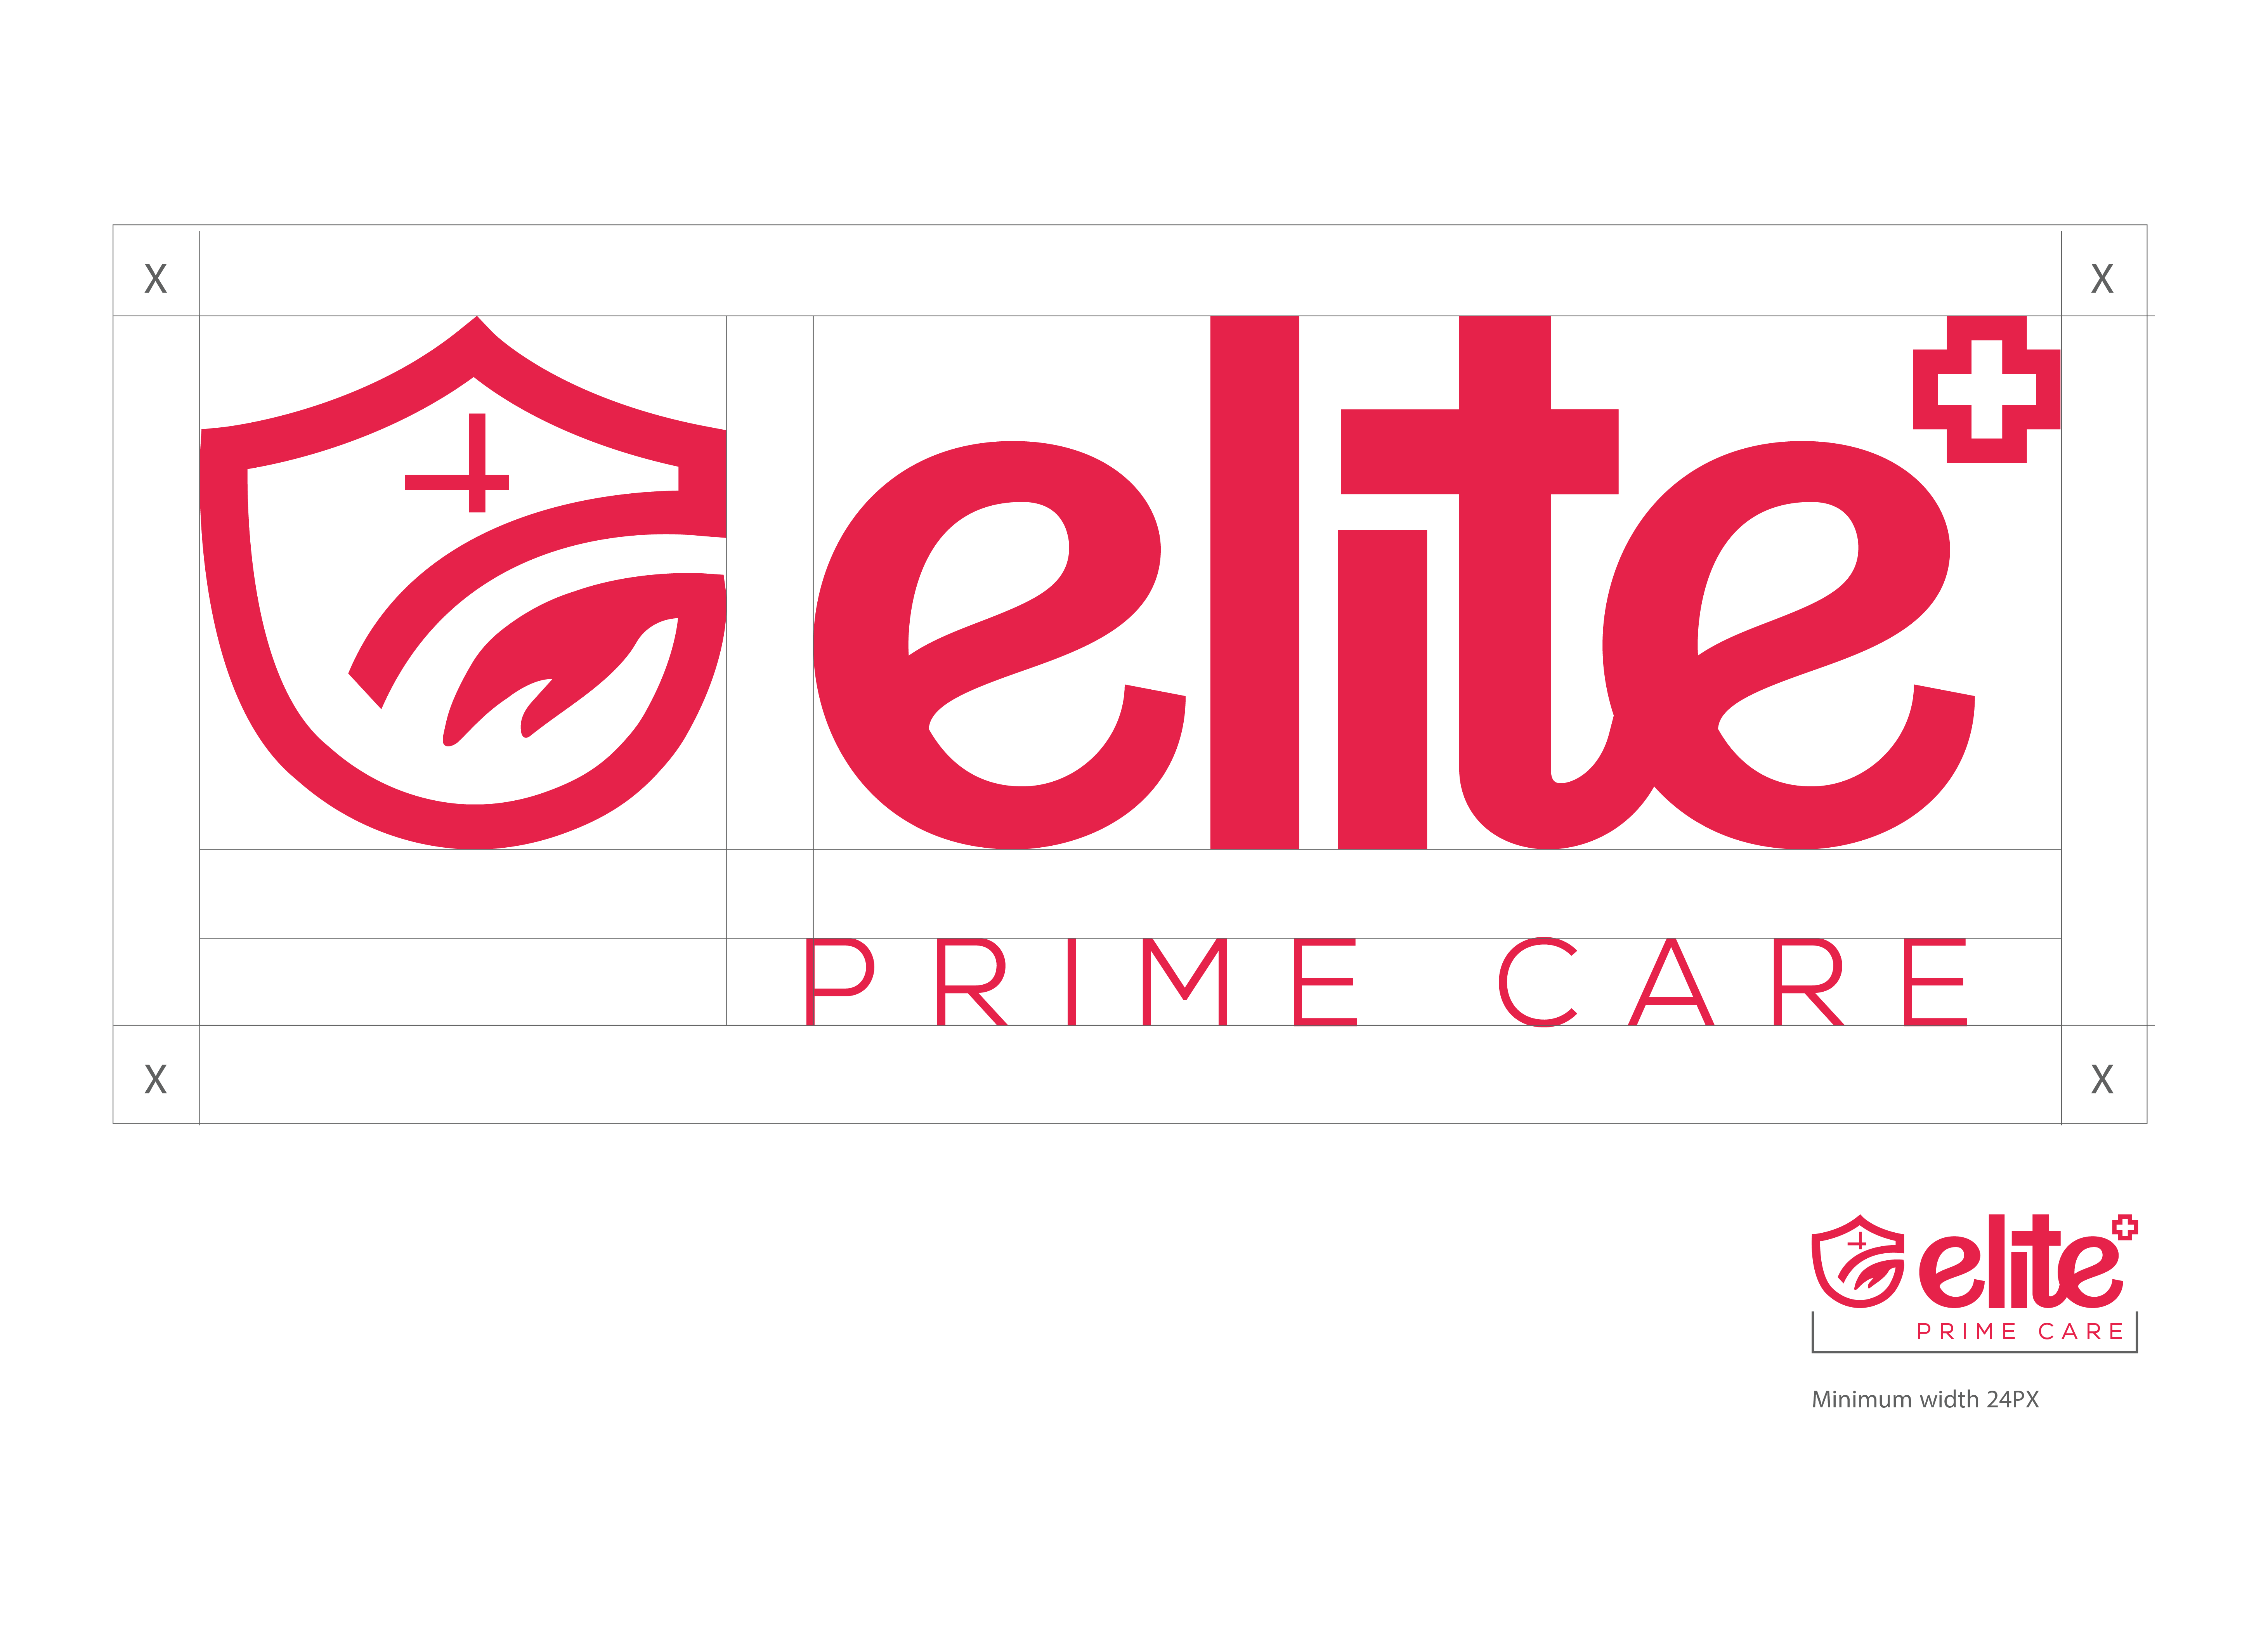 Home - Elite Prime Care